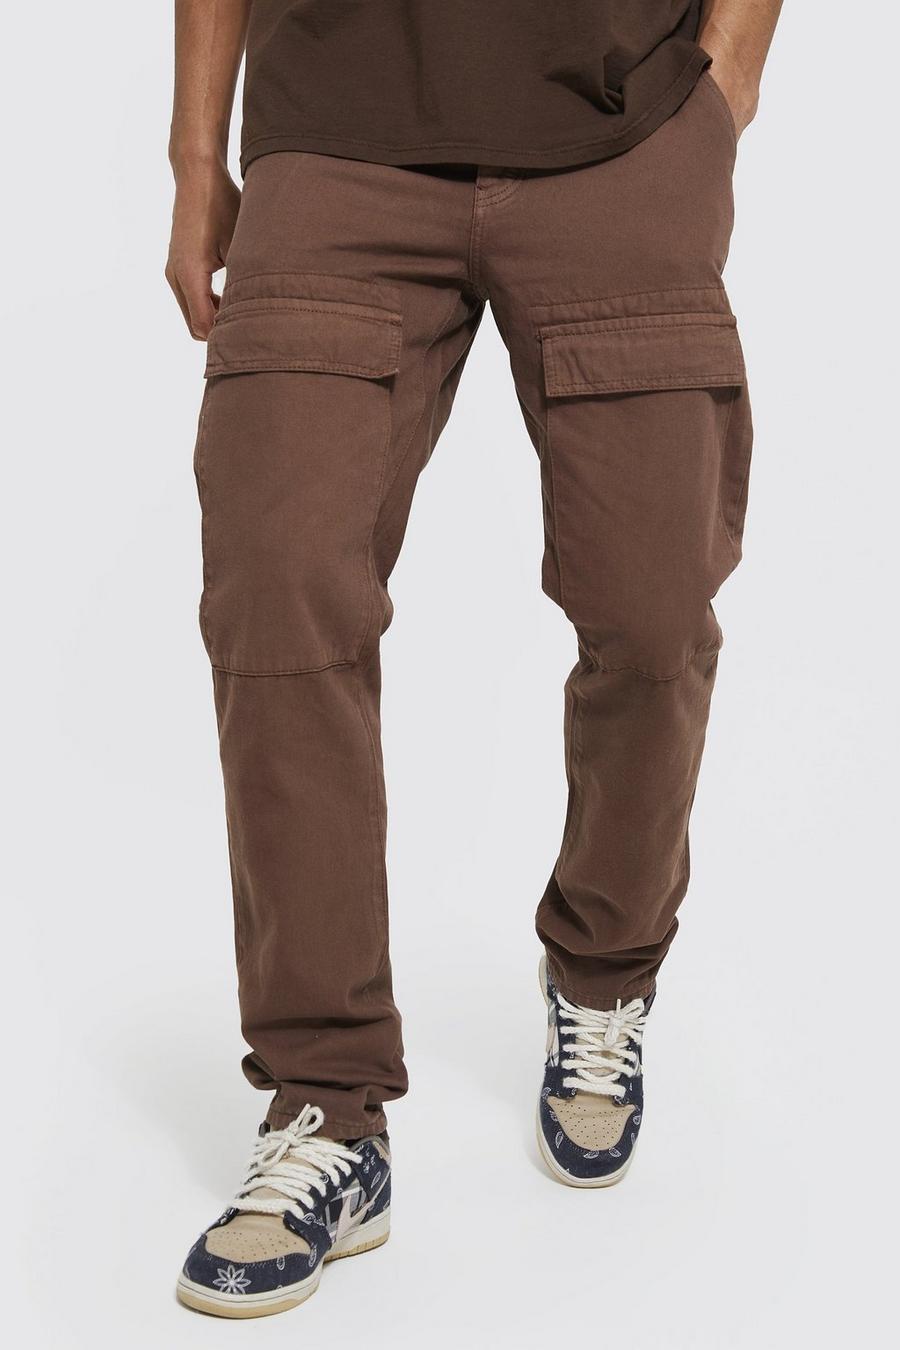 שוקולד marrone ג'ינס בגזרה ישרה עם כיסי דגמ'ח קדמיים, לגברים גבוהים